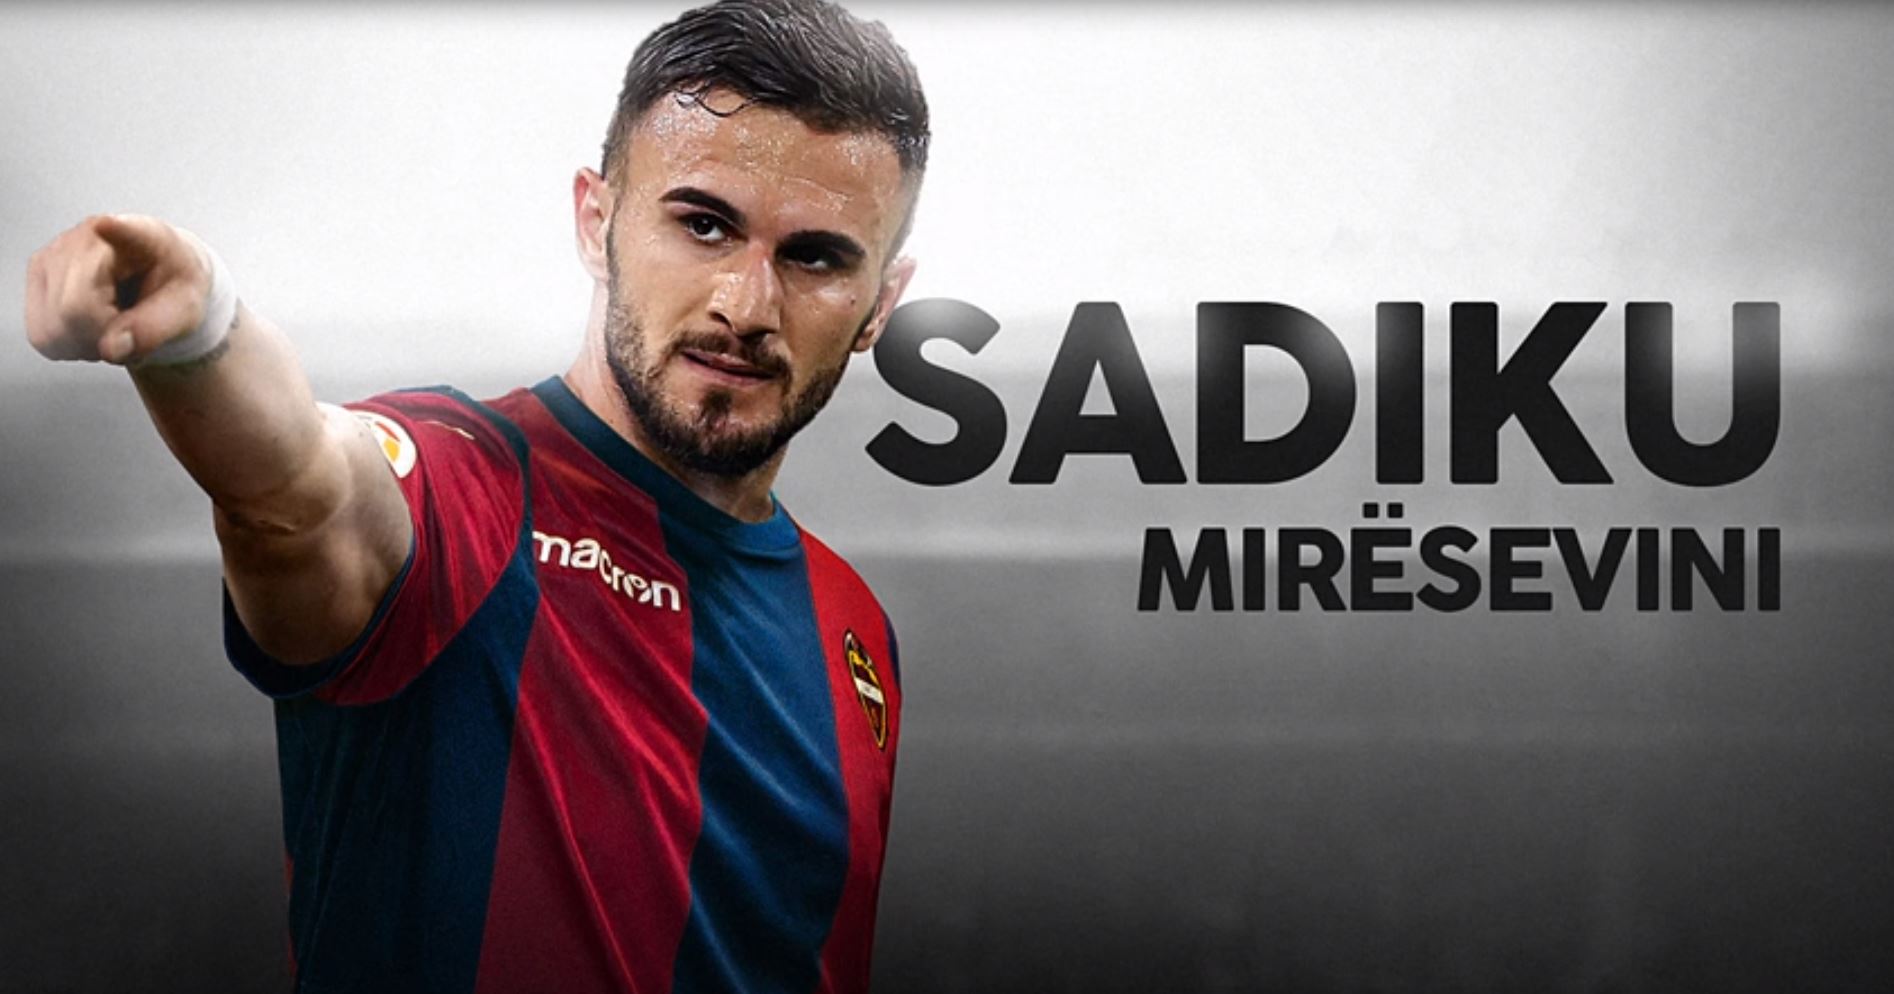 “Sadiku, mirësevini” Zyrtare, Armando Sadiku në La Liga, klubi i ri flet shqip